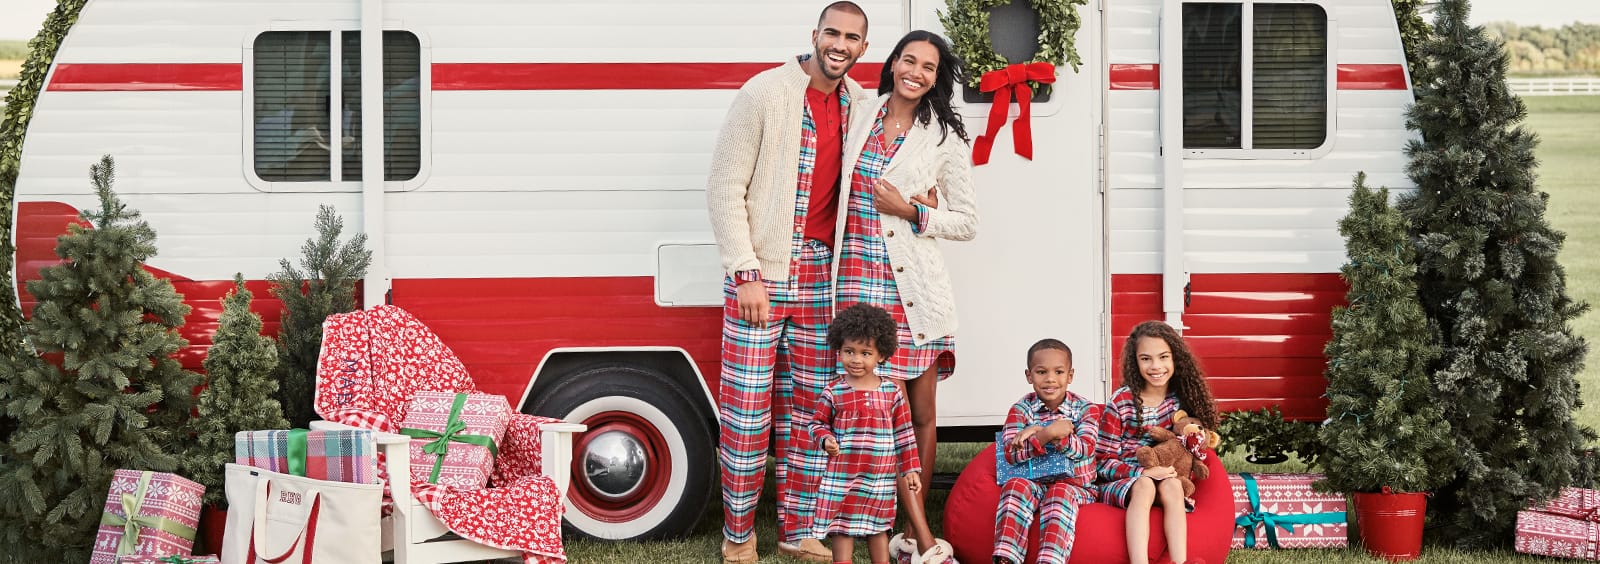 Family pajamas